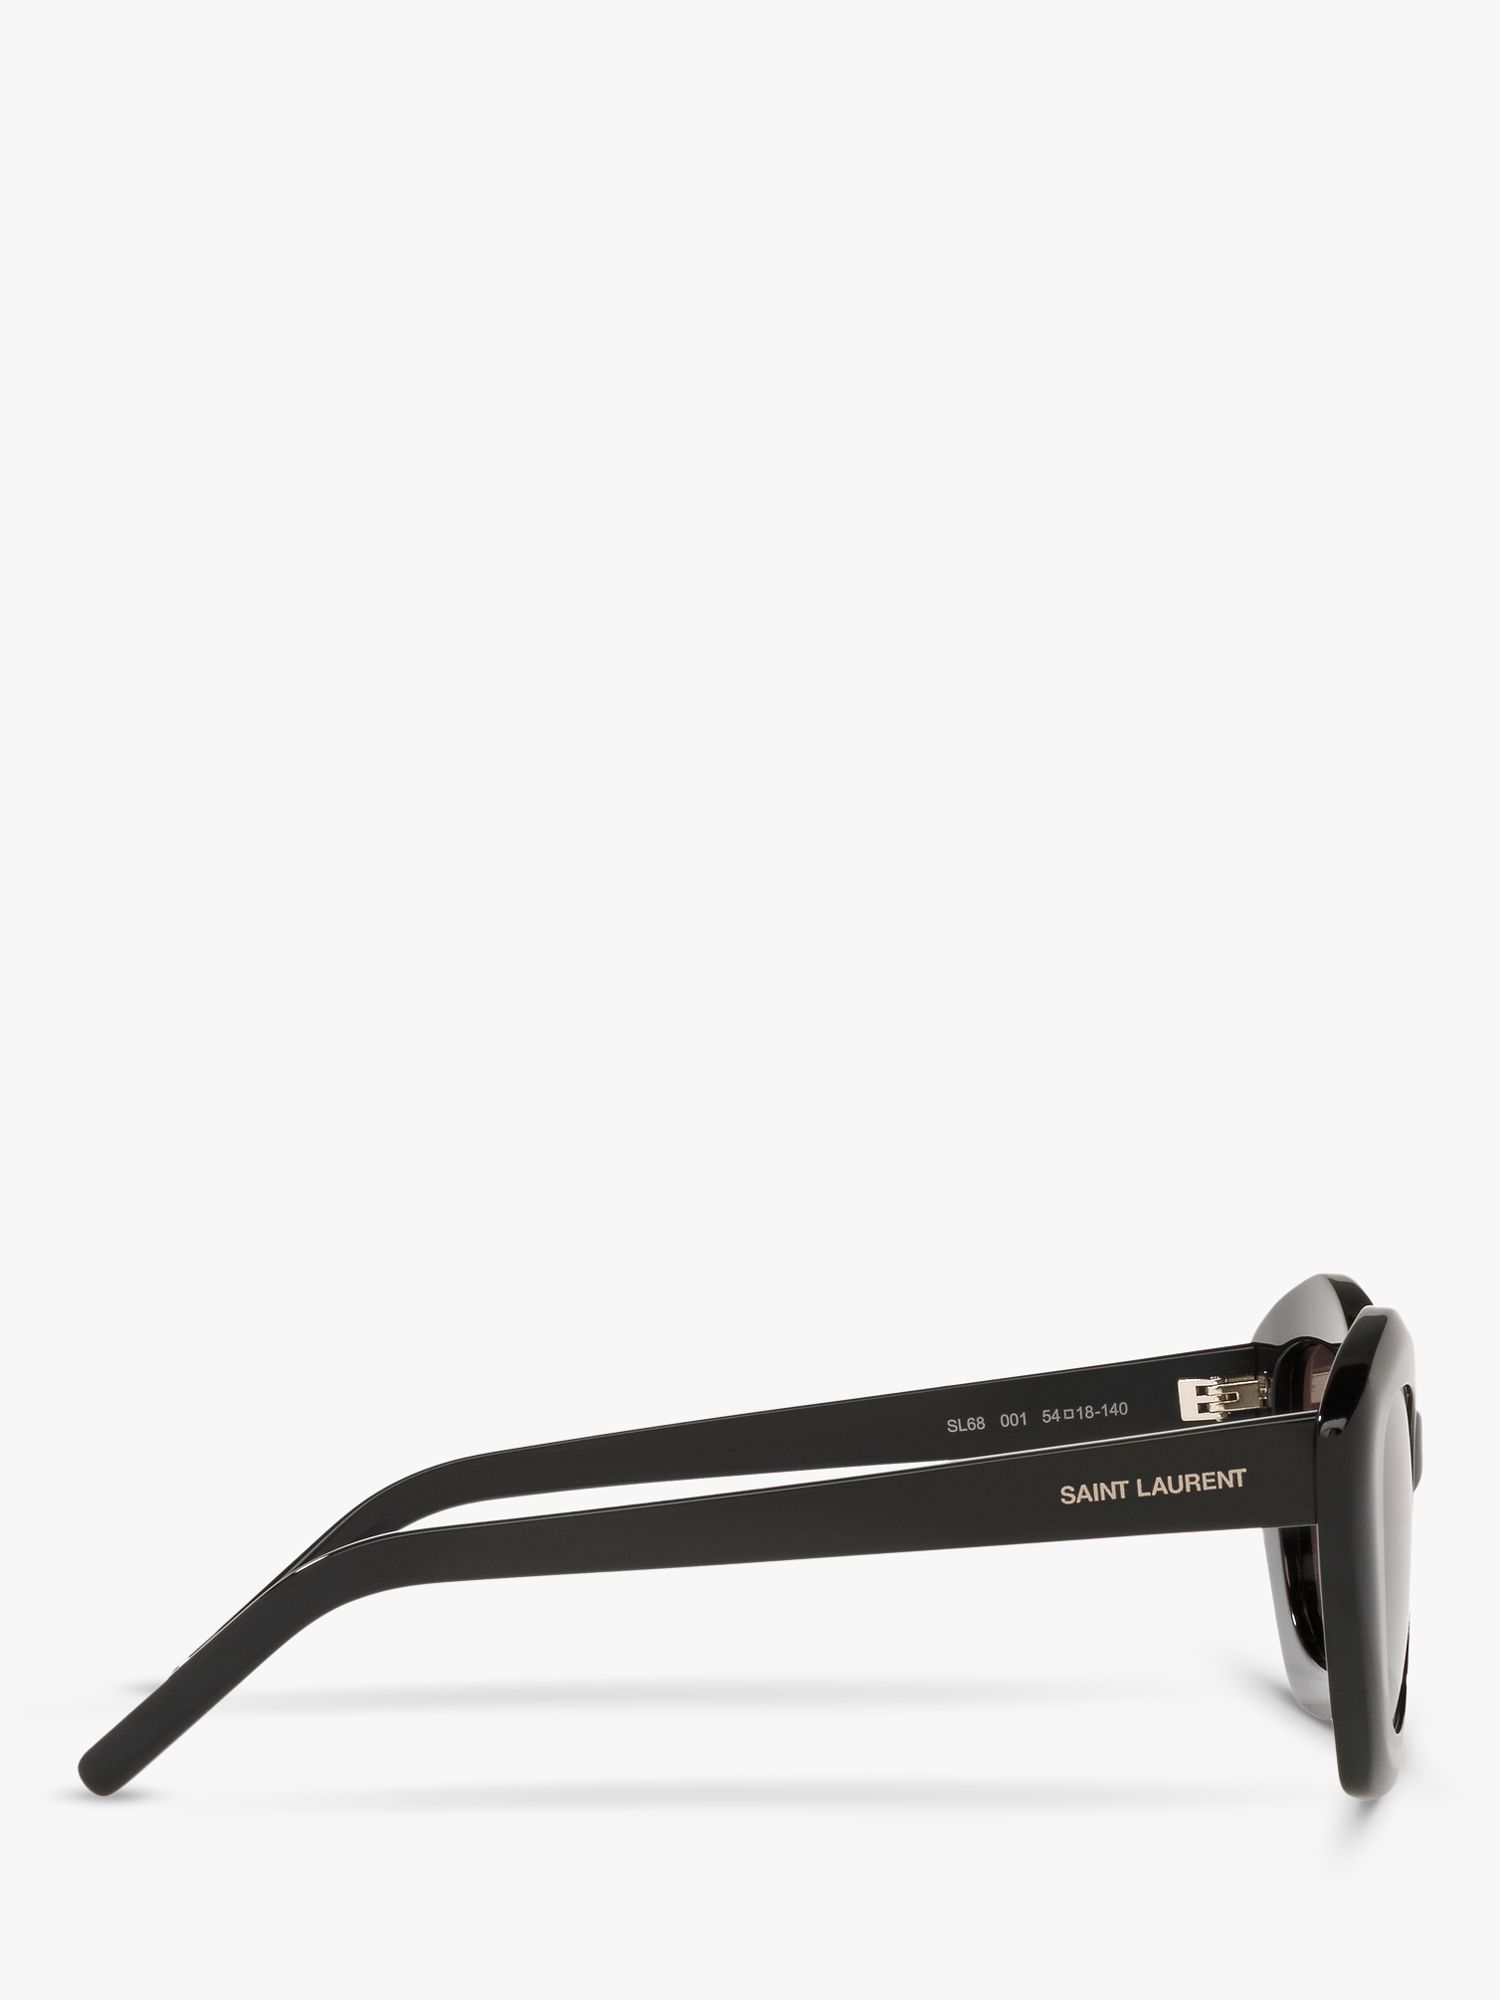 Buy Yves Saint Laurent SL 423 Women's Cat's Eye Sunglasses Online at johnlewis.com